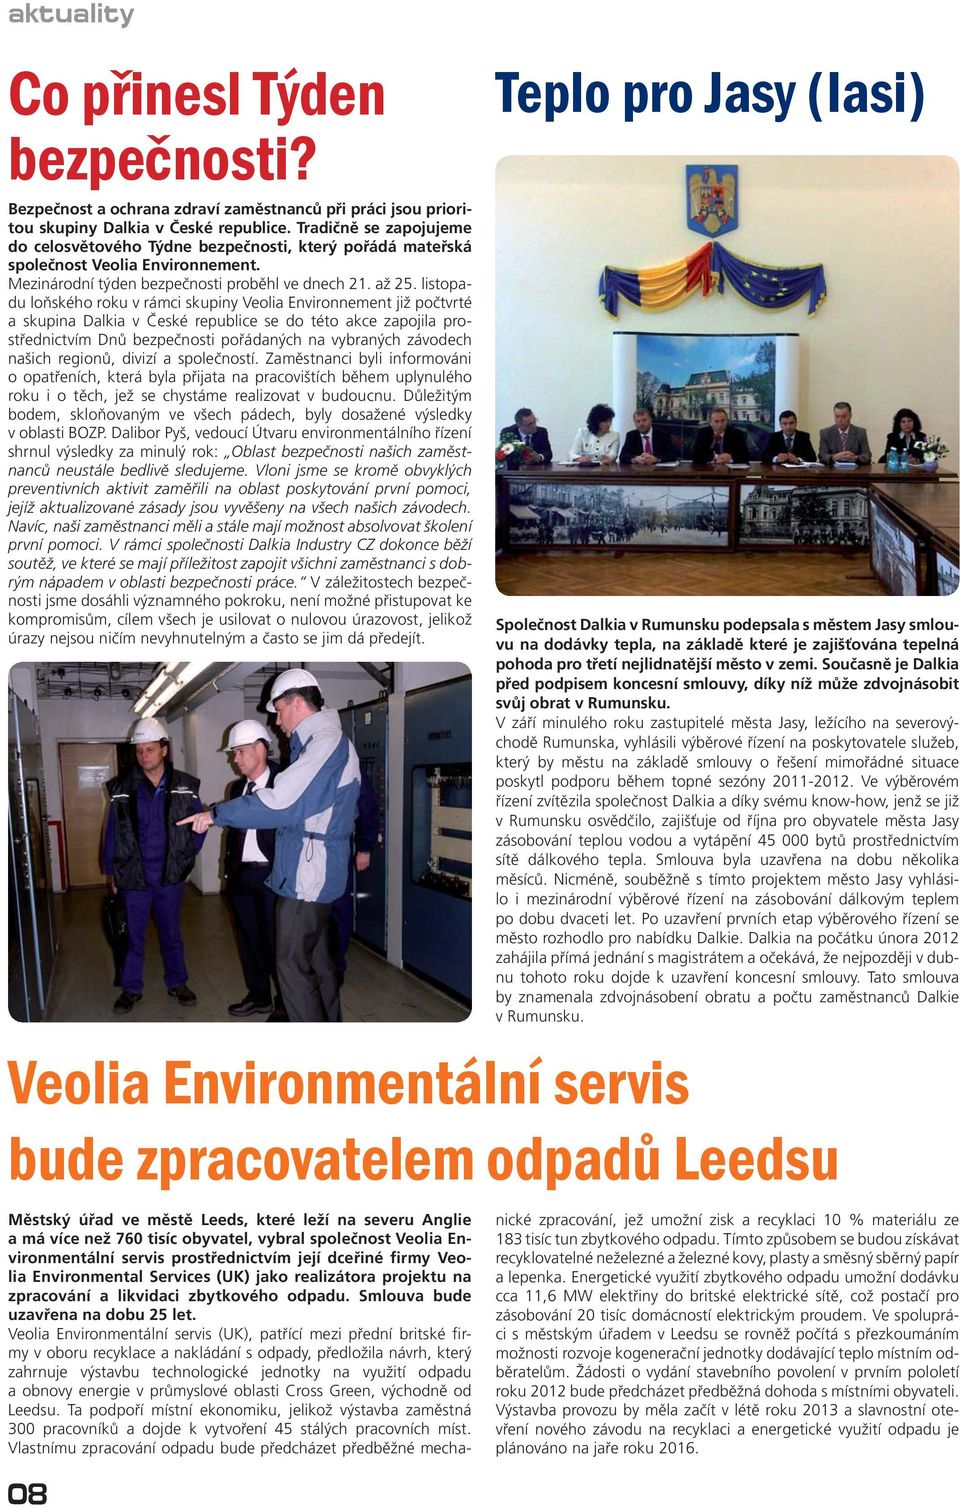 listopadu loňského roku v rámci skupiny Veolia Environnement již počtvrté a skupina Dalkia v České republice se do této akce zapojila prostřednictvím Dnů bezpečnosti pořádaných na vybraných závodech